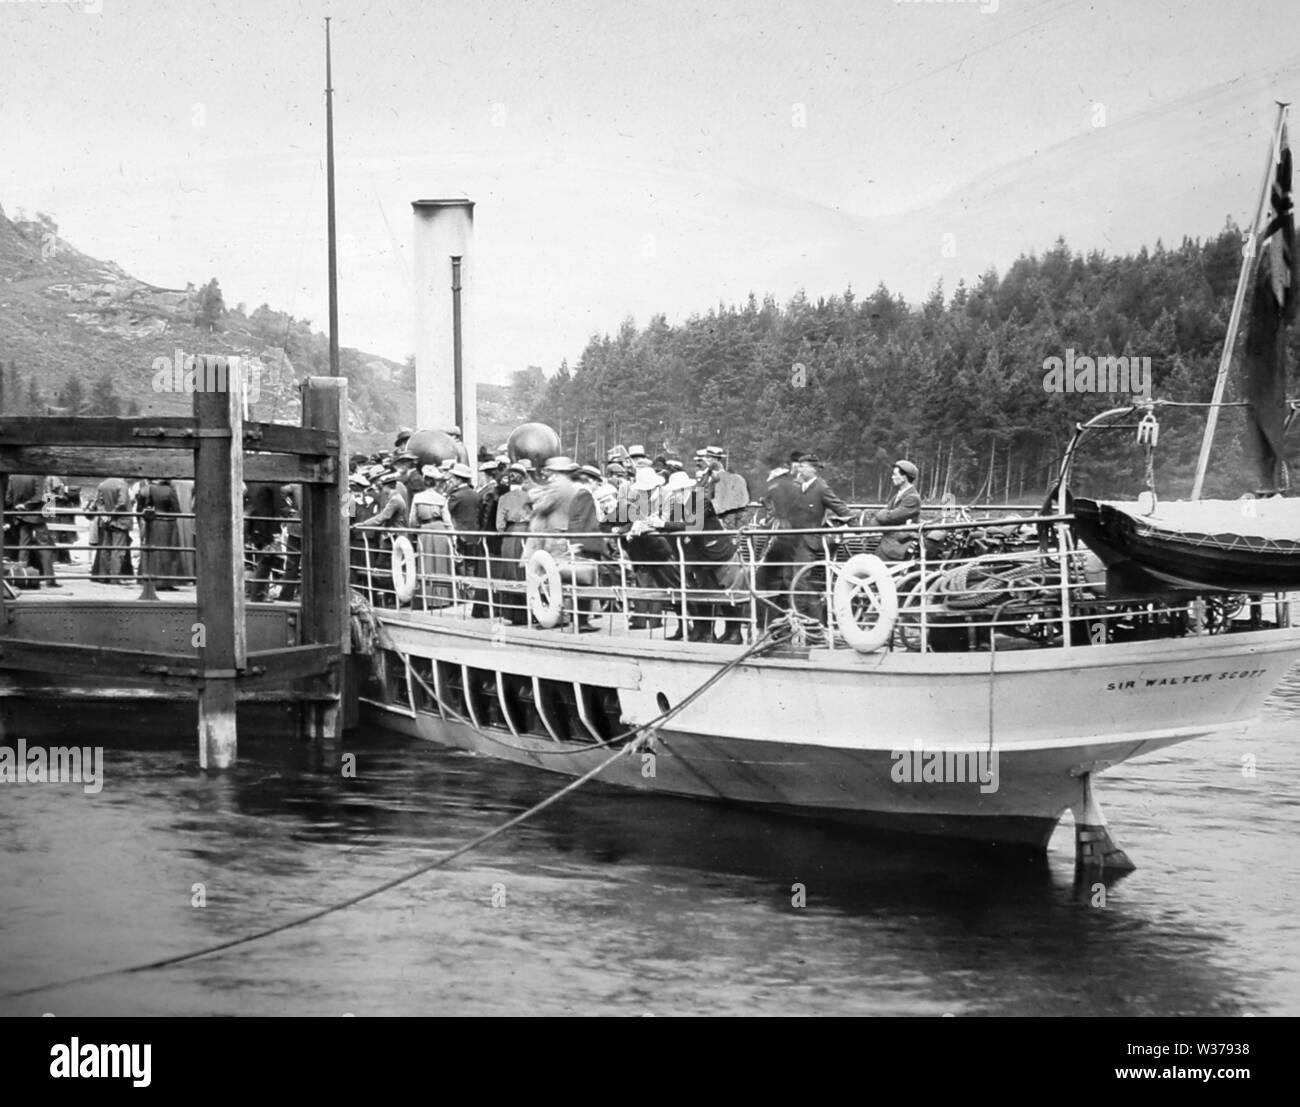 Sir Walter Scott steamer at Stronachlachar Pier, Loch Katrine, Scotland Stock Photo